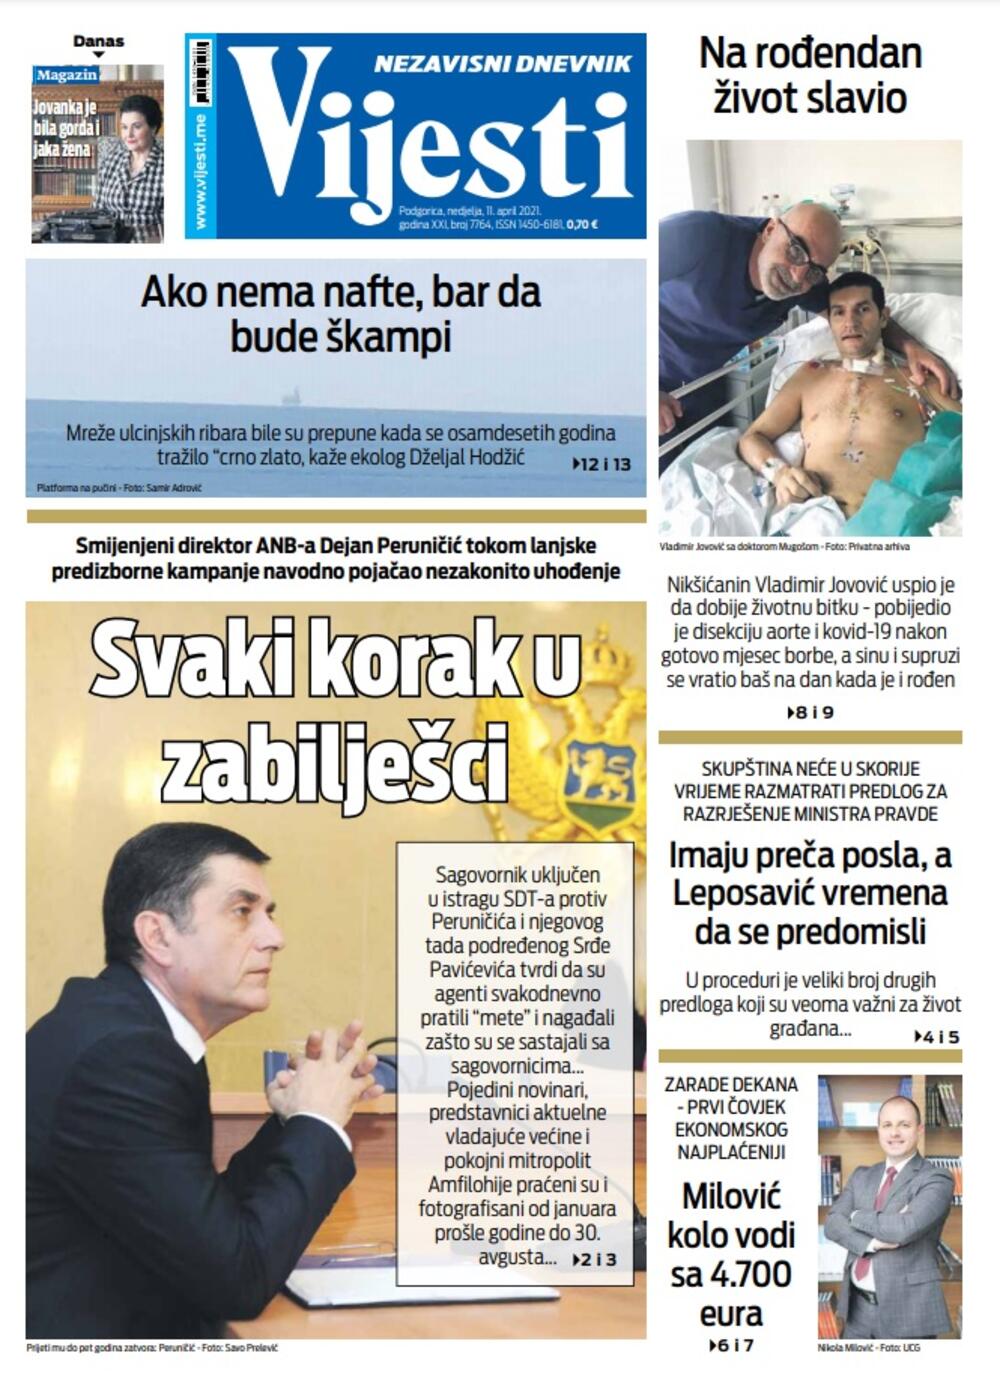 Naslovna strana "Vijesti" za 11. april 2021., Foto: Vijesti